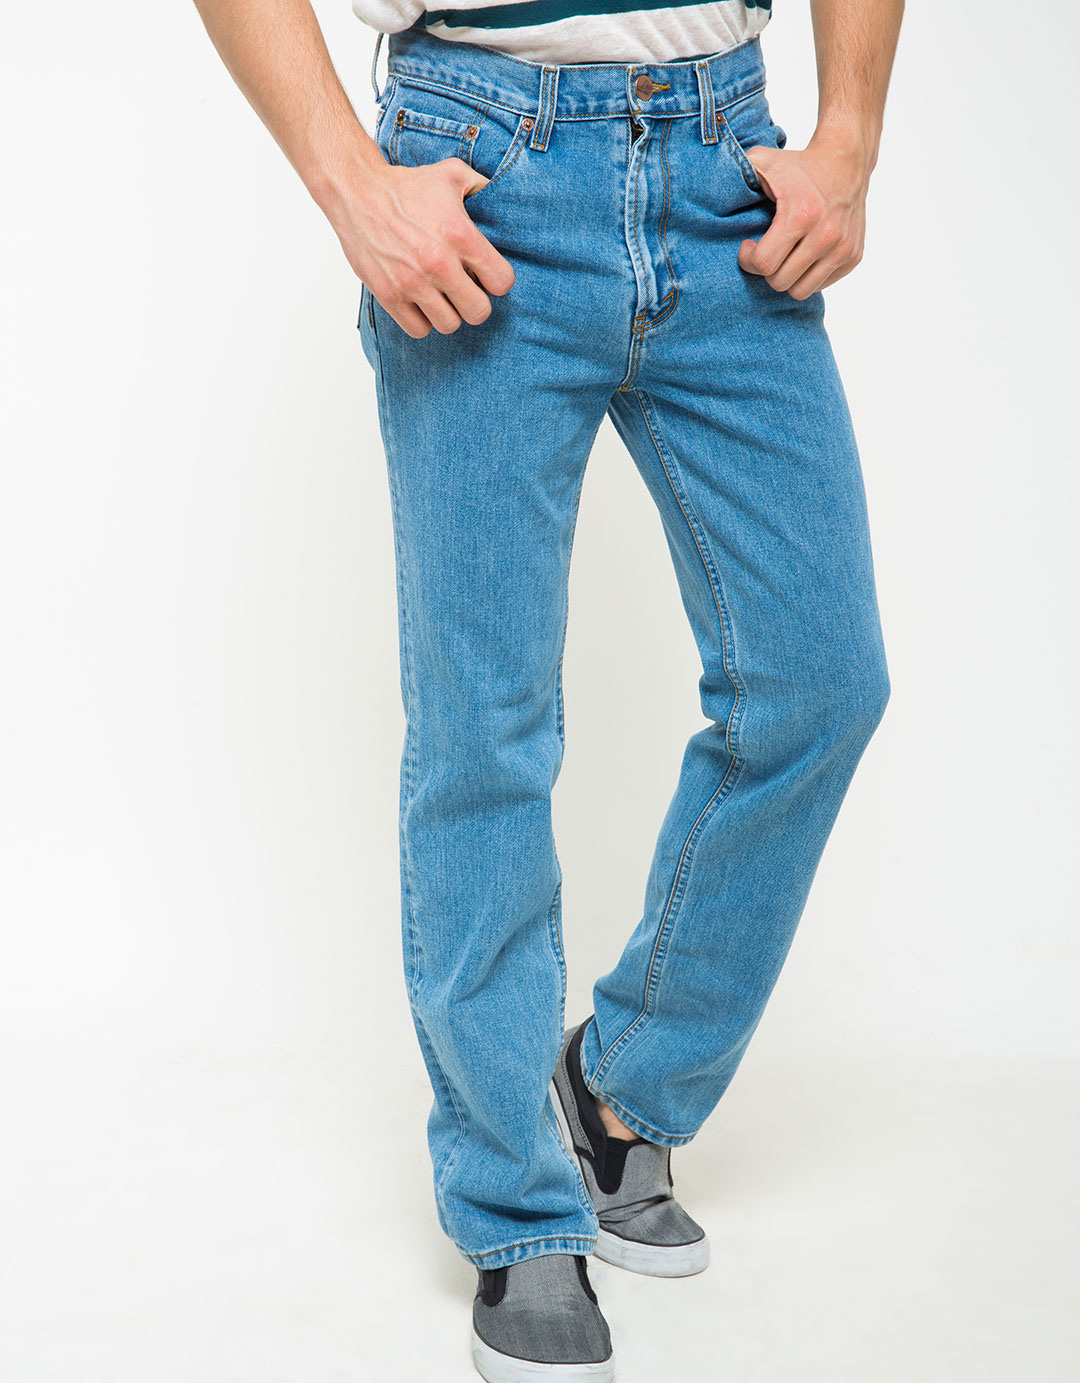 Grosir Distributor Celana Jeans Lea 09 Harga Murah Bagus Berkualitas